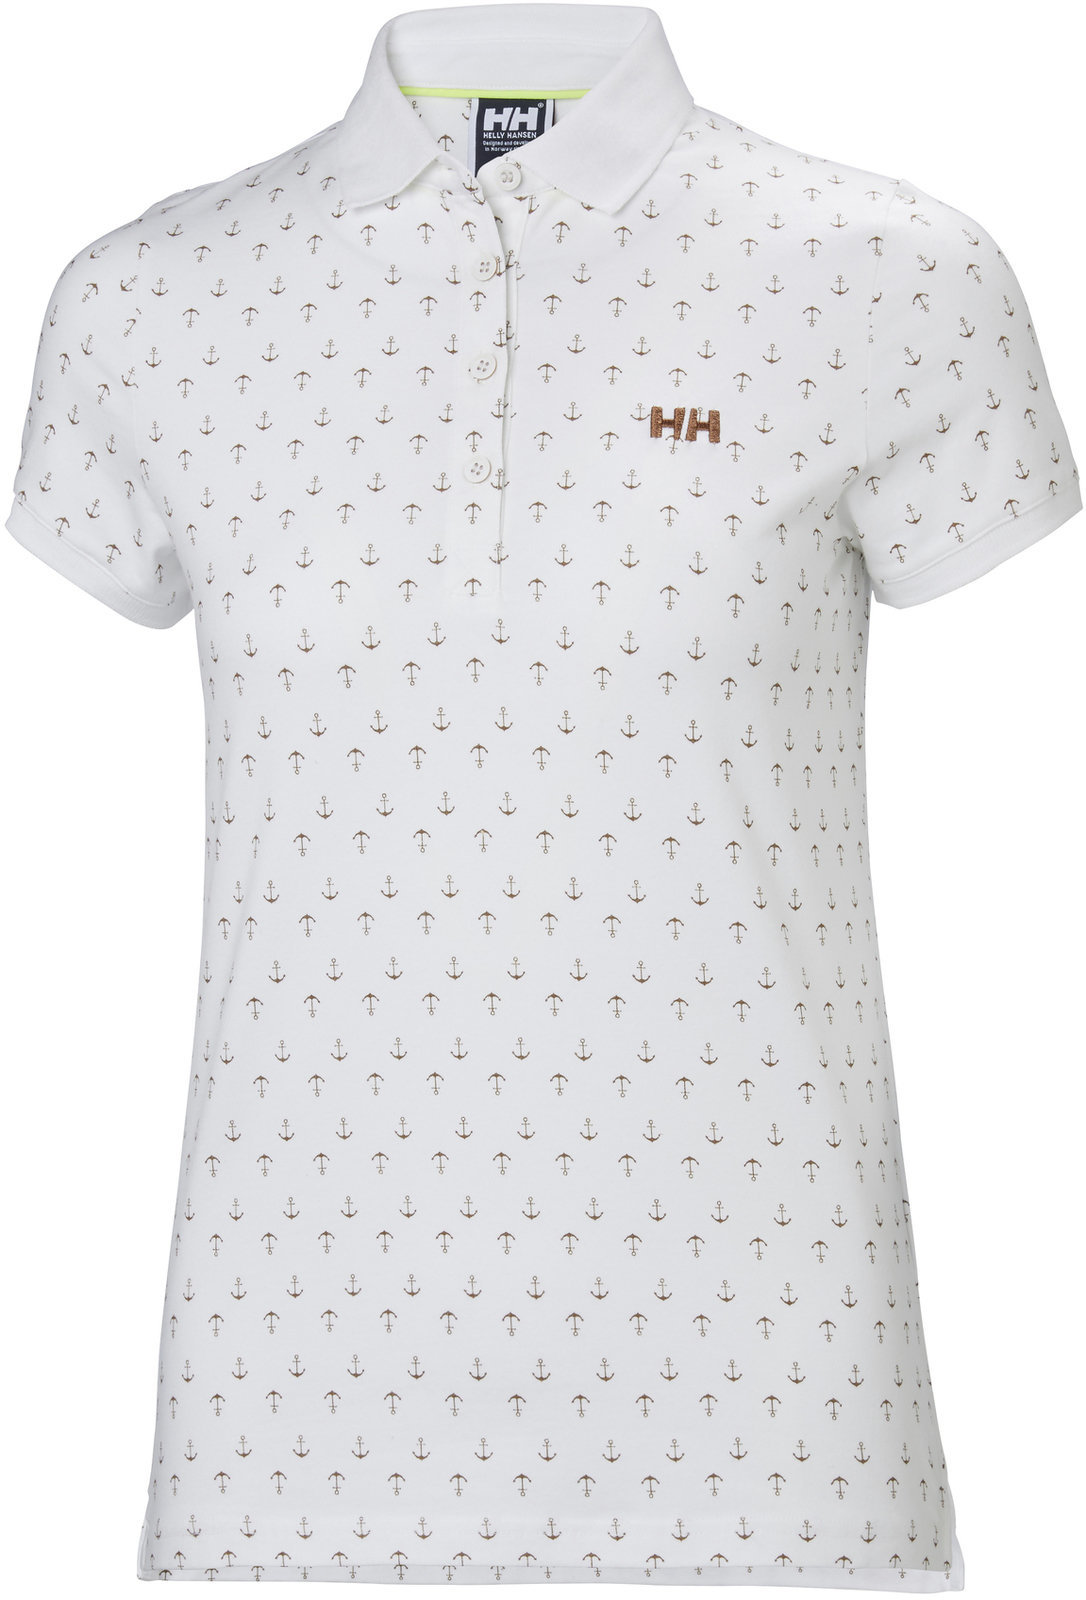 Shirt Helly Hansen W Naiad Breeze Polo White Anchor - M